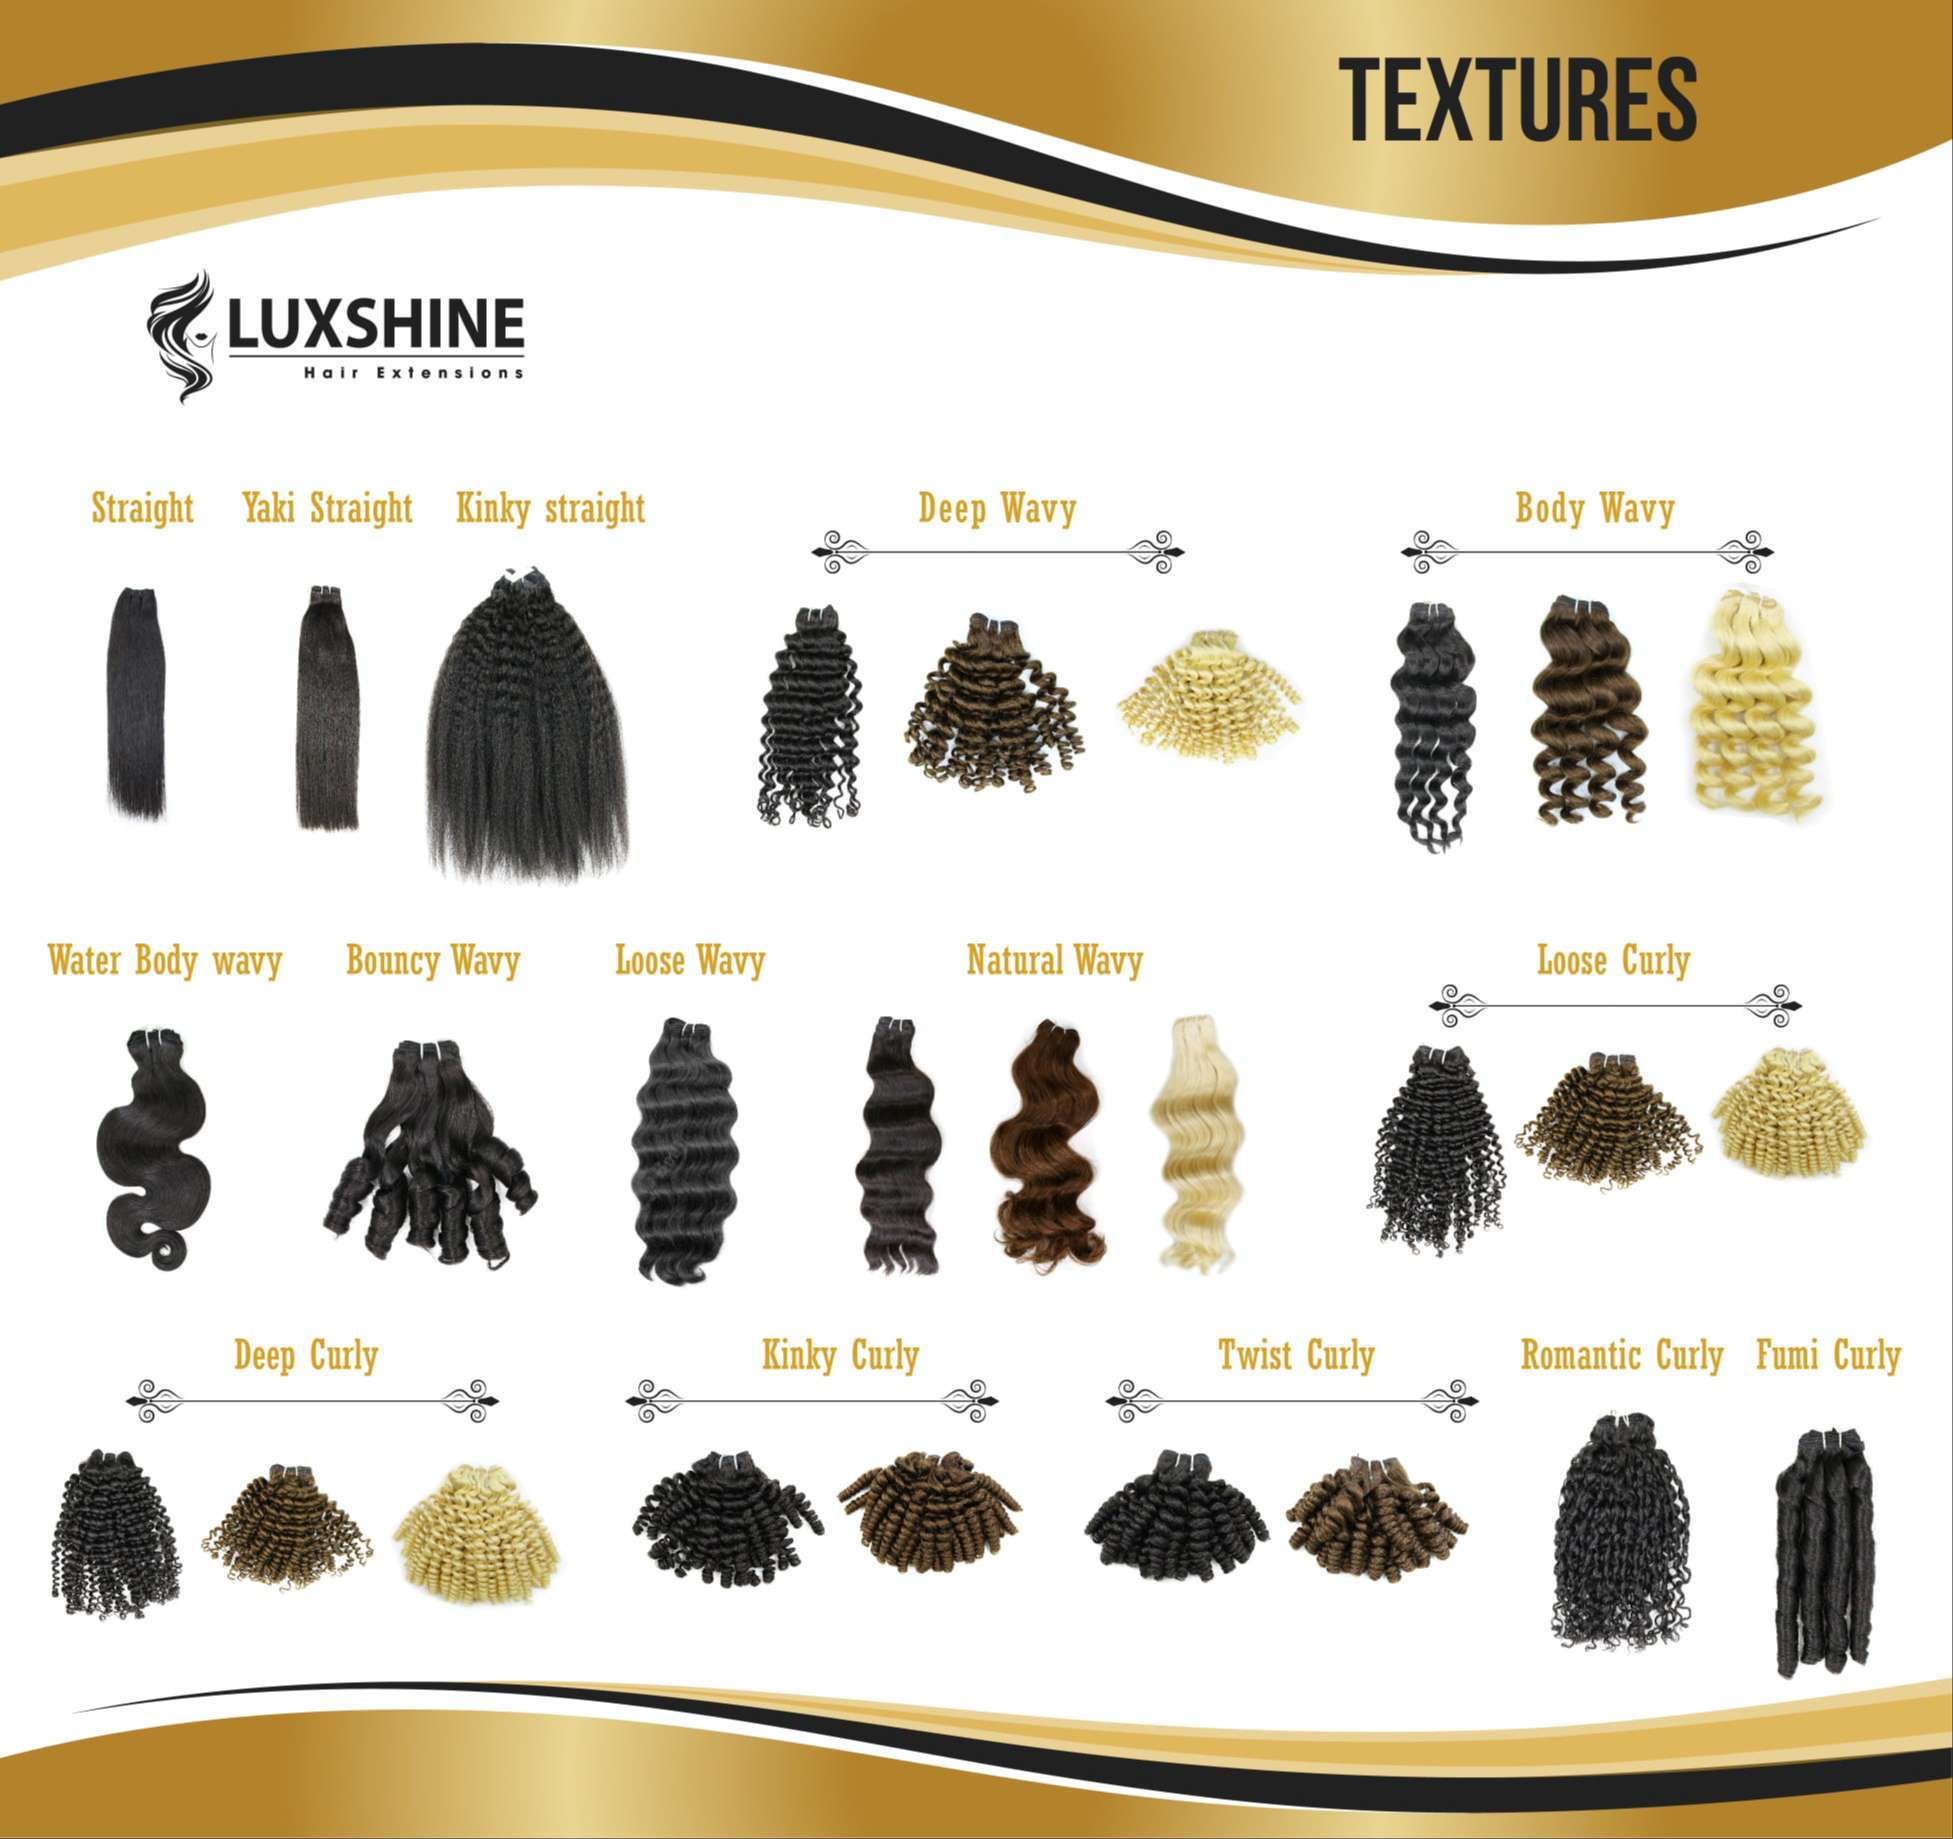 Texture chart